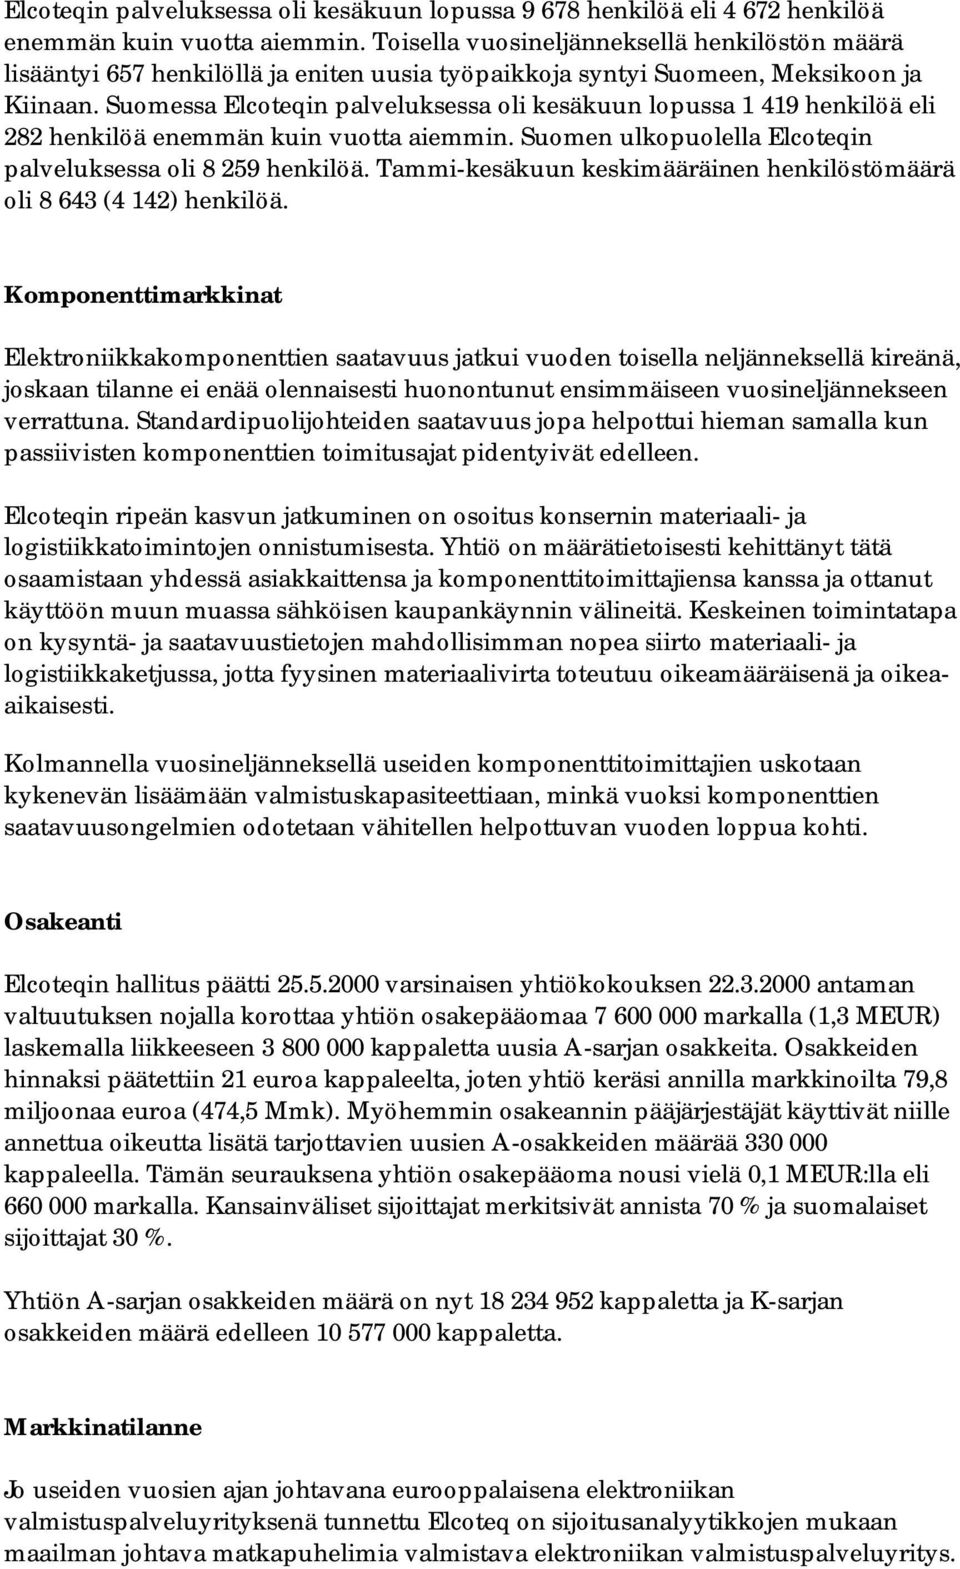 Suomessa Elcoteqin palveluksessa oli kesäkuun lopussa 1 419 henkilöä eli 282 henkilöä enemmän kuin vuotta aiemmin. Suomen ulkopuolella Elcoteqin palveluksessa oli 8 259 henkilöä.